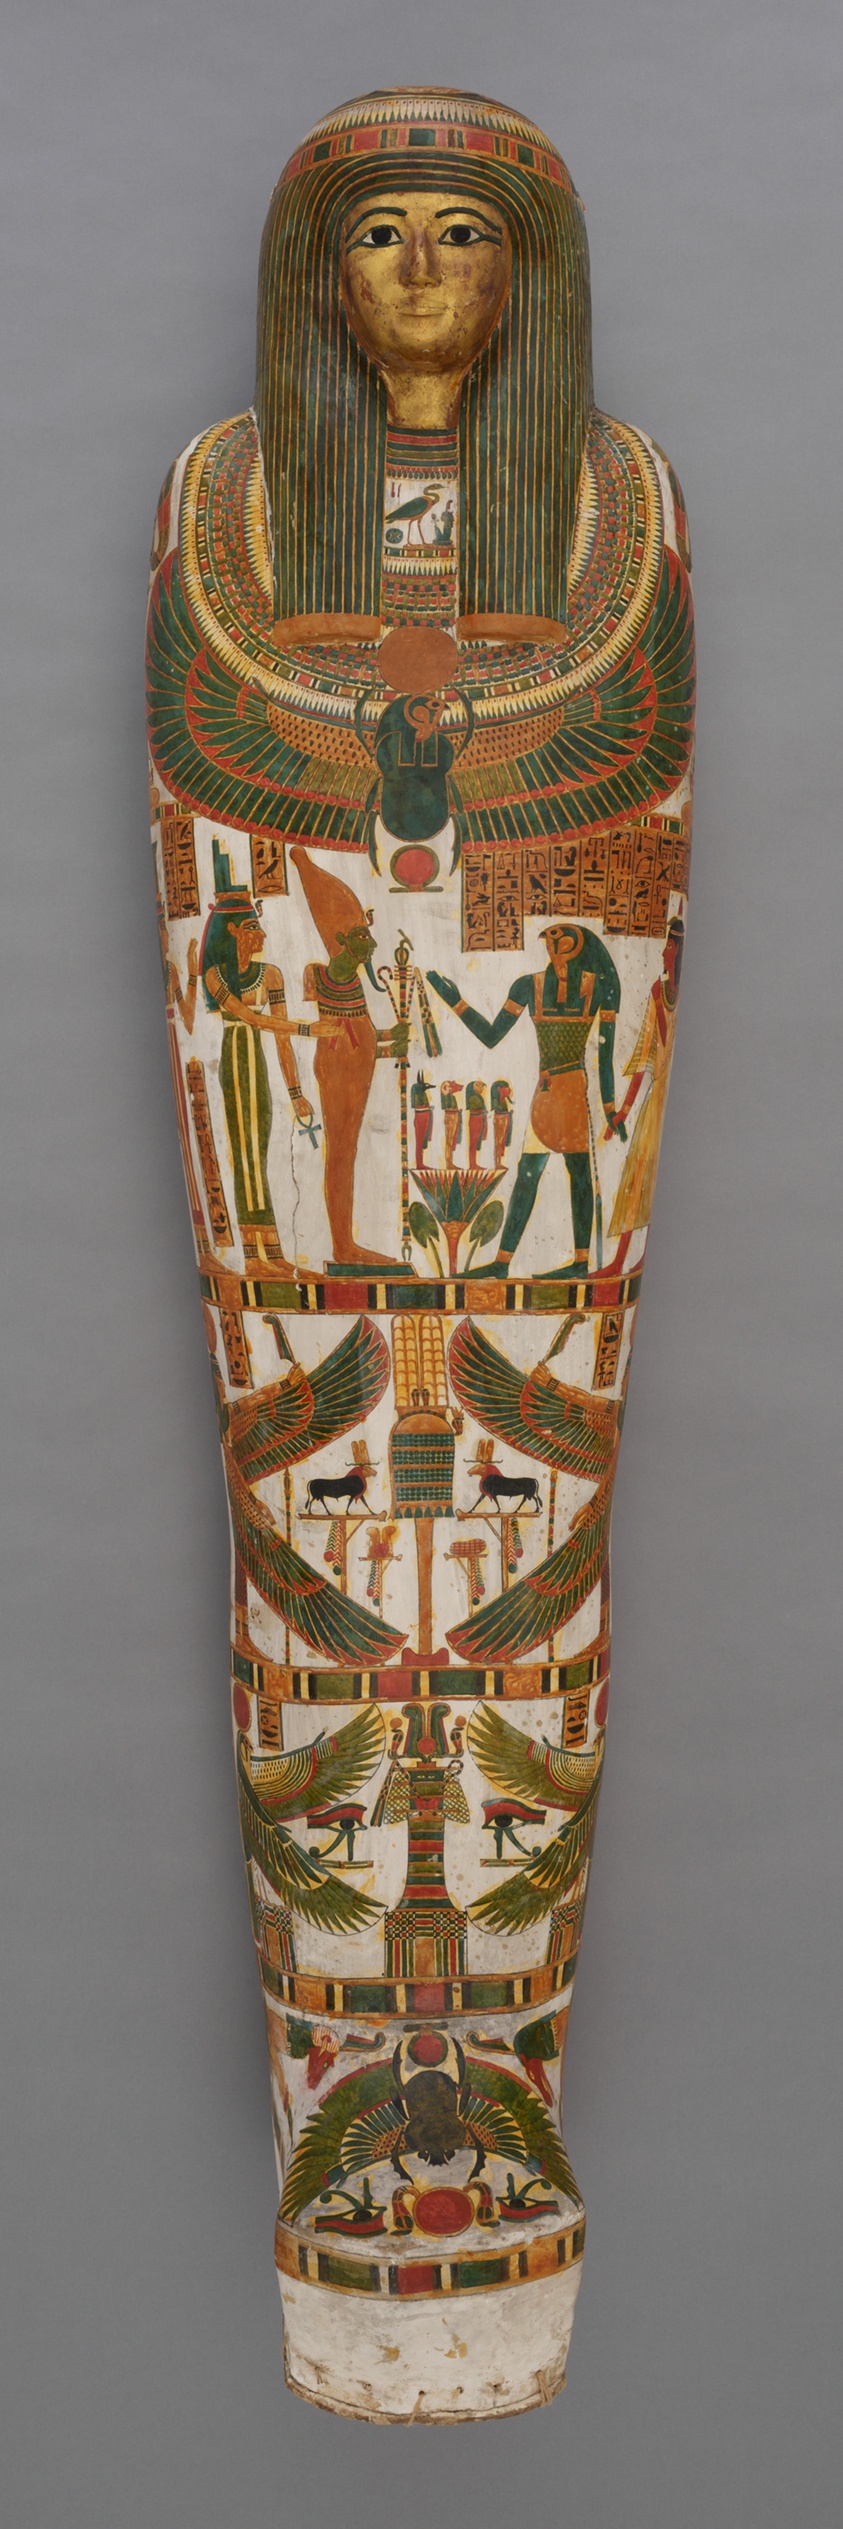 帕安科-阿蒙的棺椁和木乃伊，第三中间期，第二十二王朝（约公元前945-前715年），古埃及